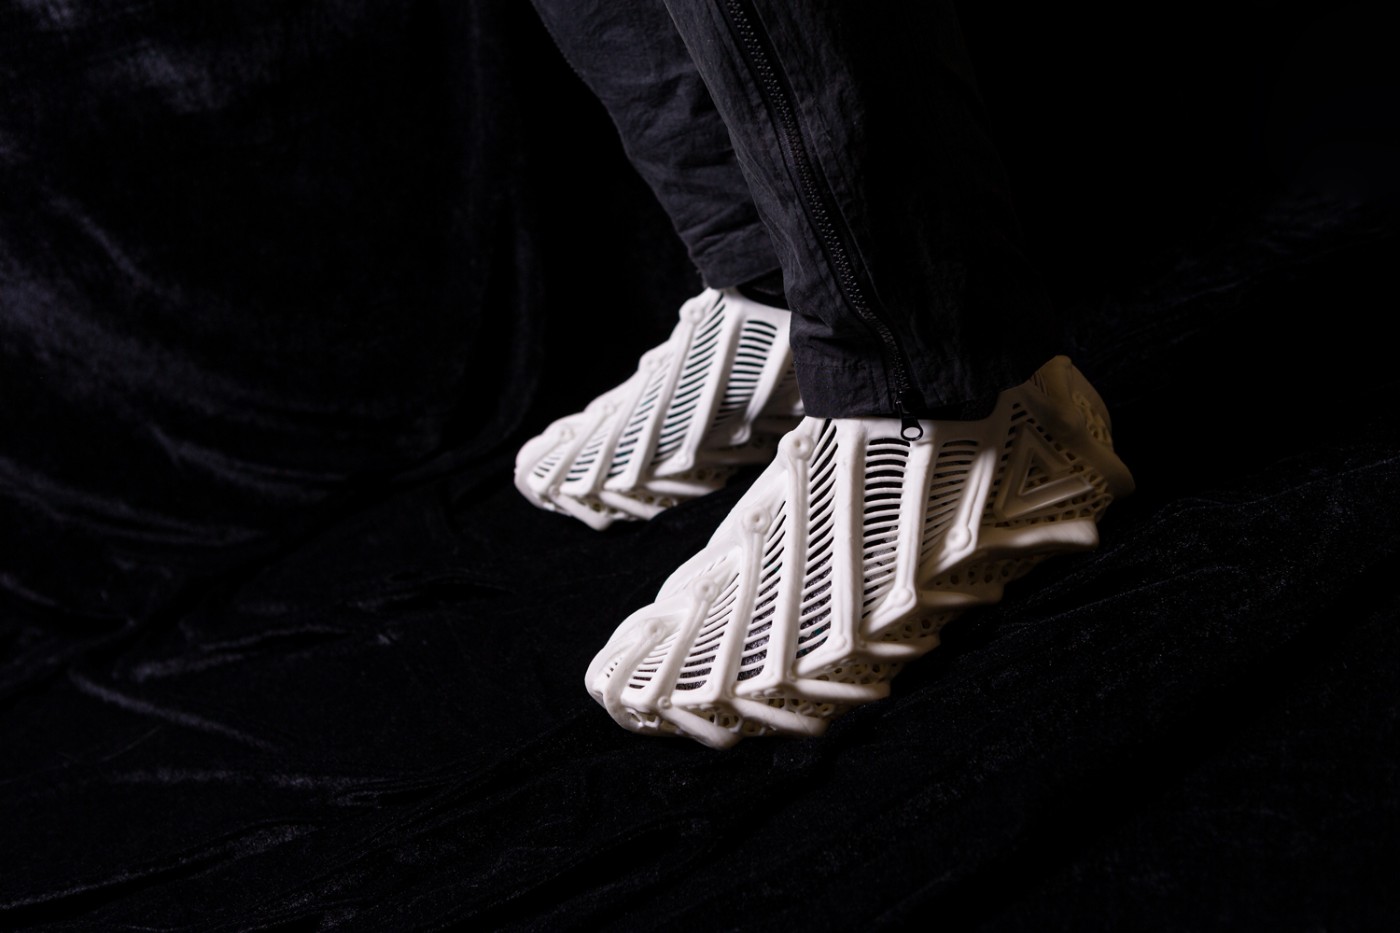 匹克,PEAK,发售,普罗米修斯  匹克行啊！这鞋都让它做出来了！全新 3D 打印鞋造型超特别！